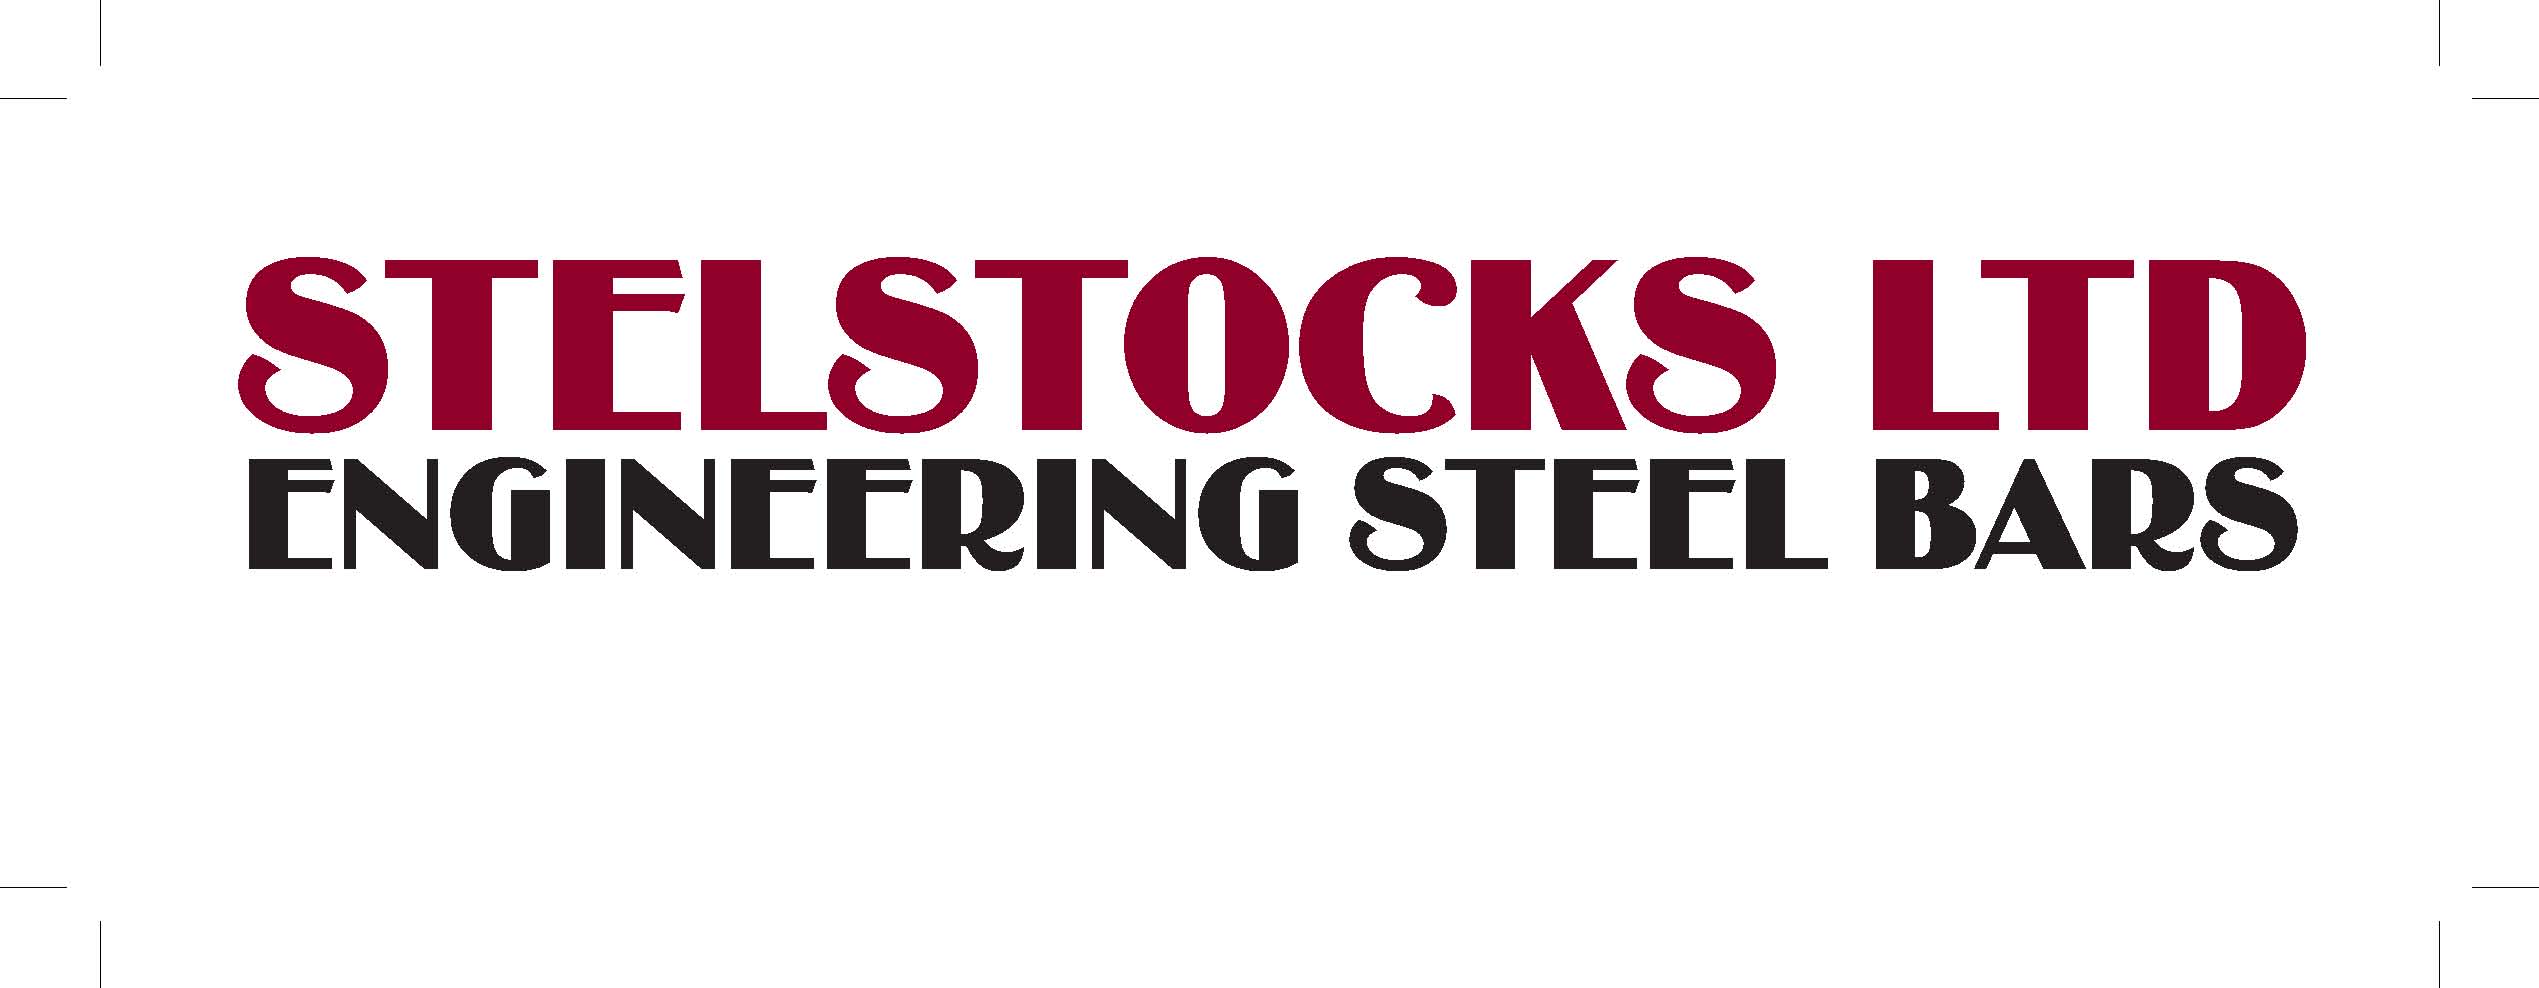 Stelstocks Ltd